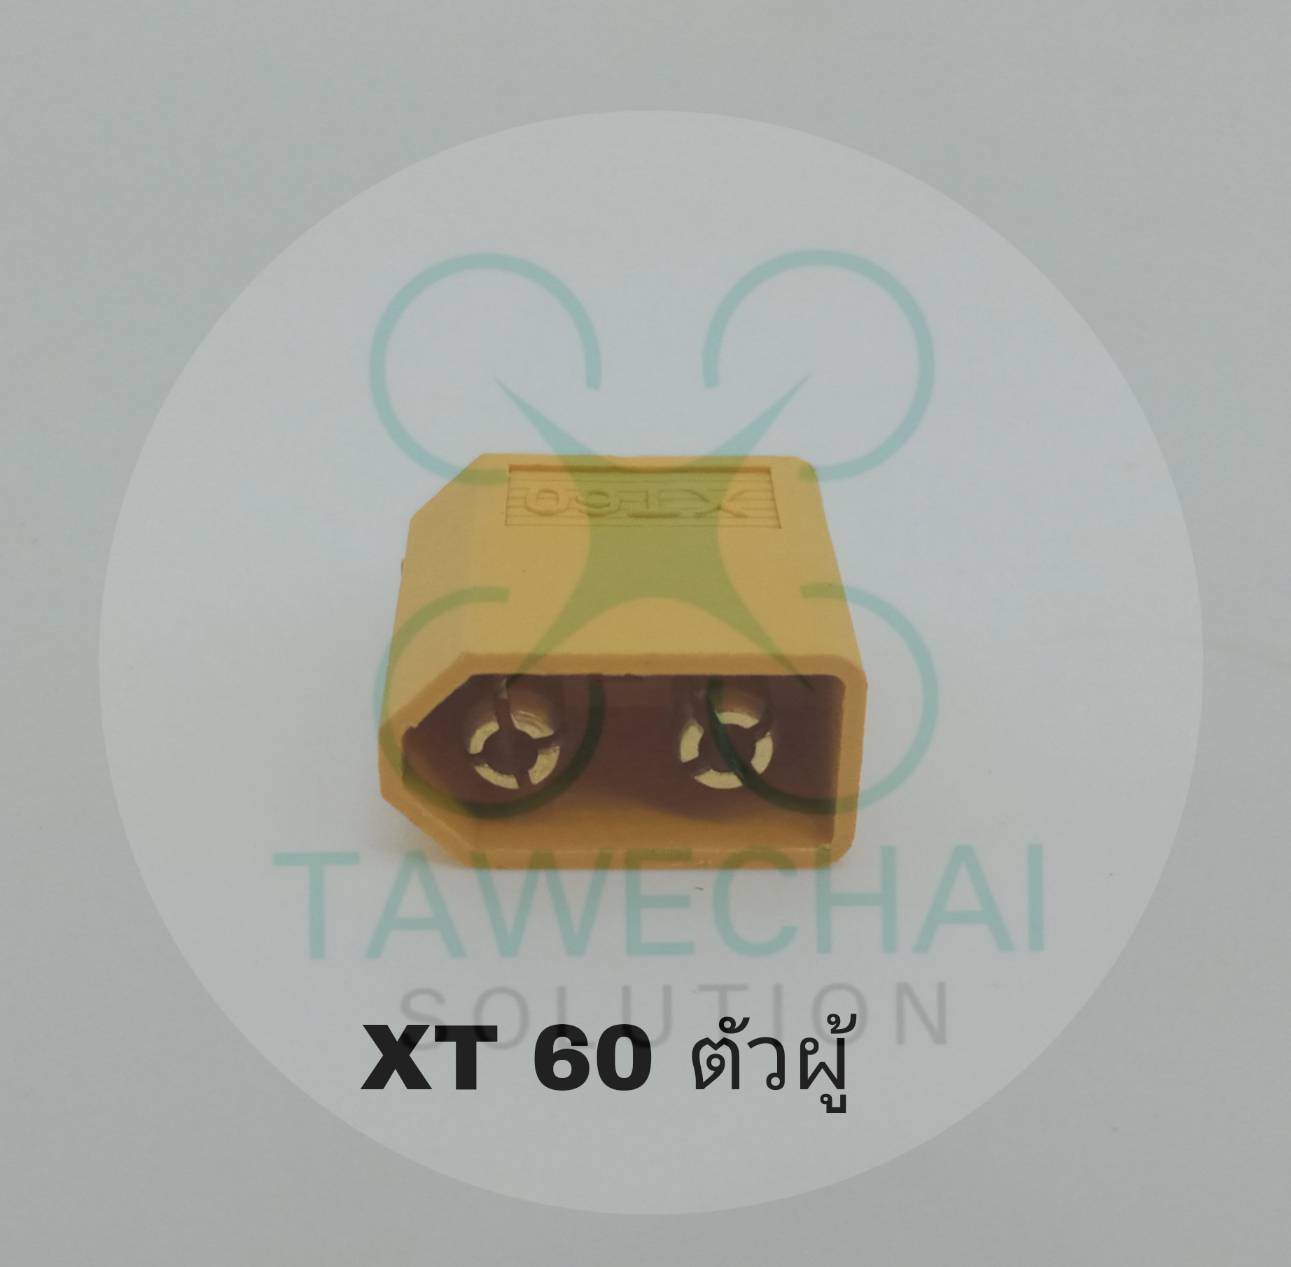 ปลั๊ก XT 60 ไม่มีปลอก มีให้เลือกทั้งตัวผู้ และตัวเมีย (ร้านในไทย ส้งเร็ว)